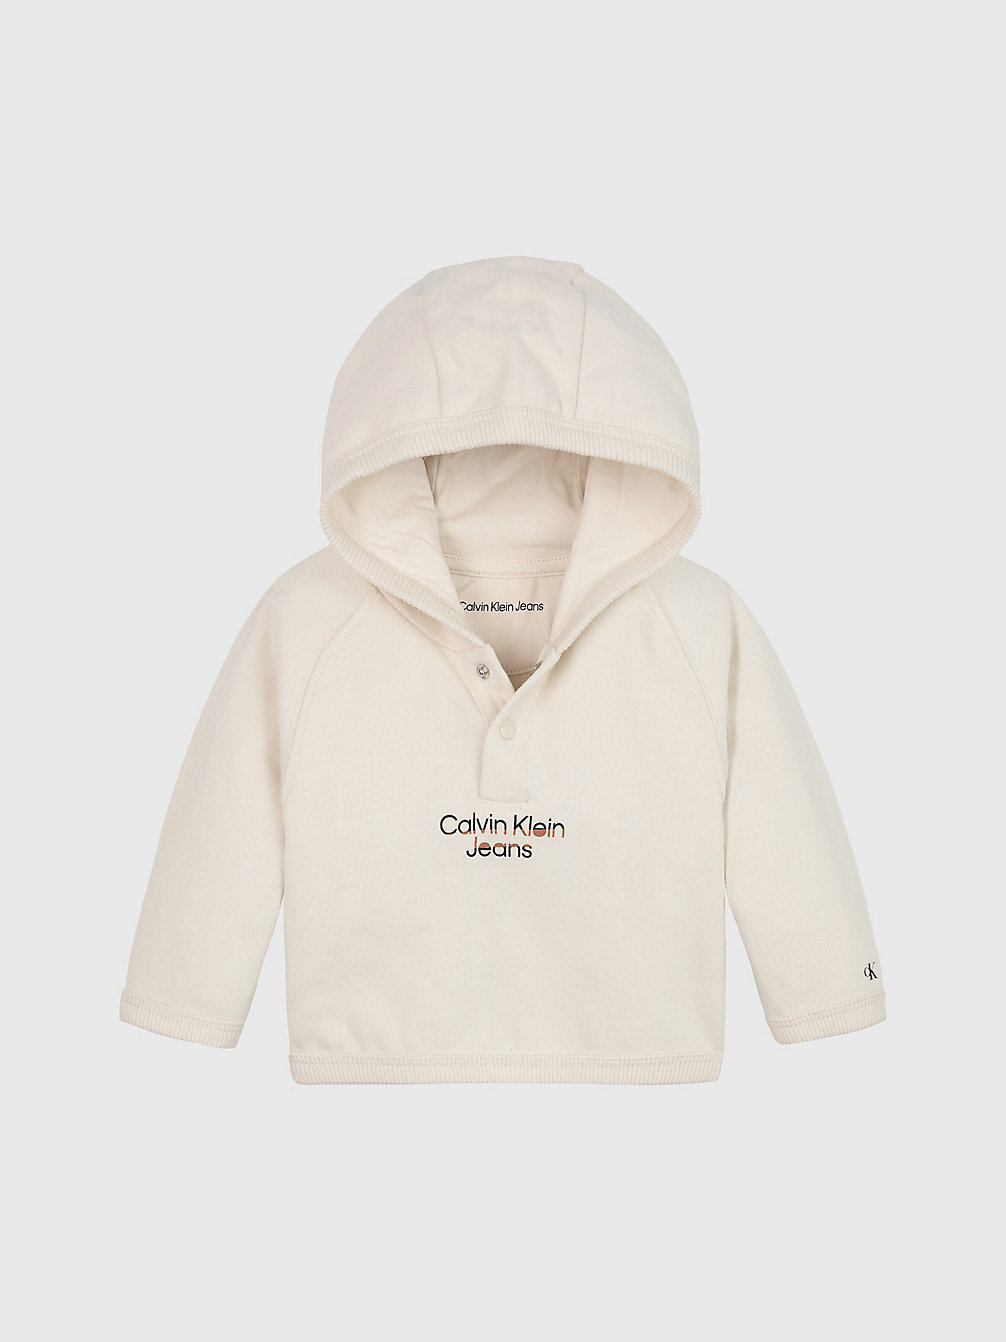 WHITECAP GRAY Newborn Fleece Logo Hoodie undefined newborn Calvin Klein